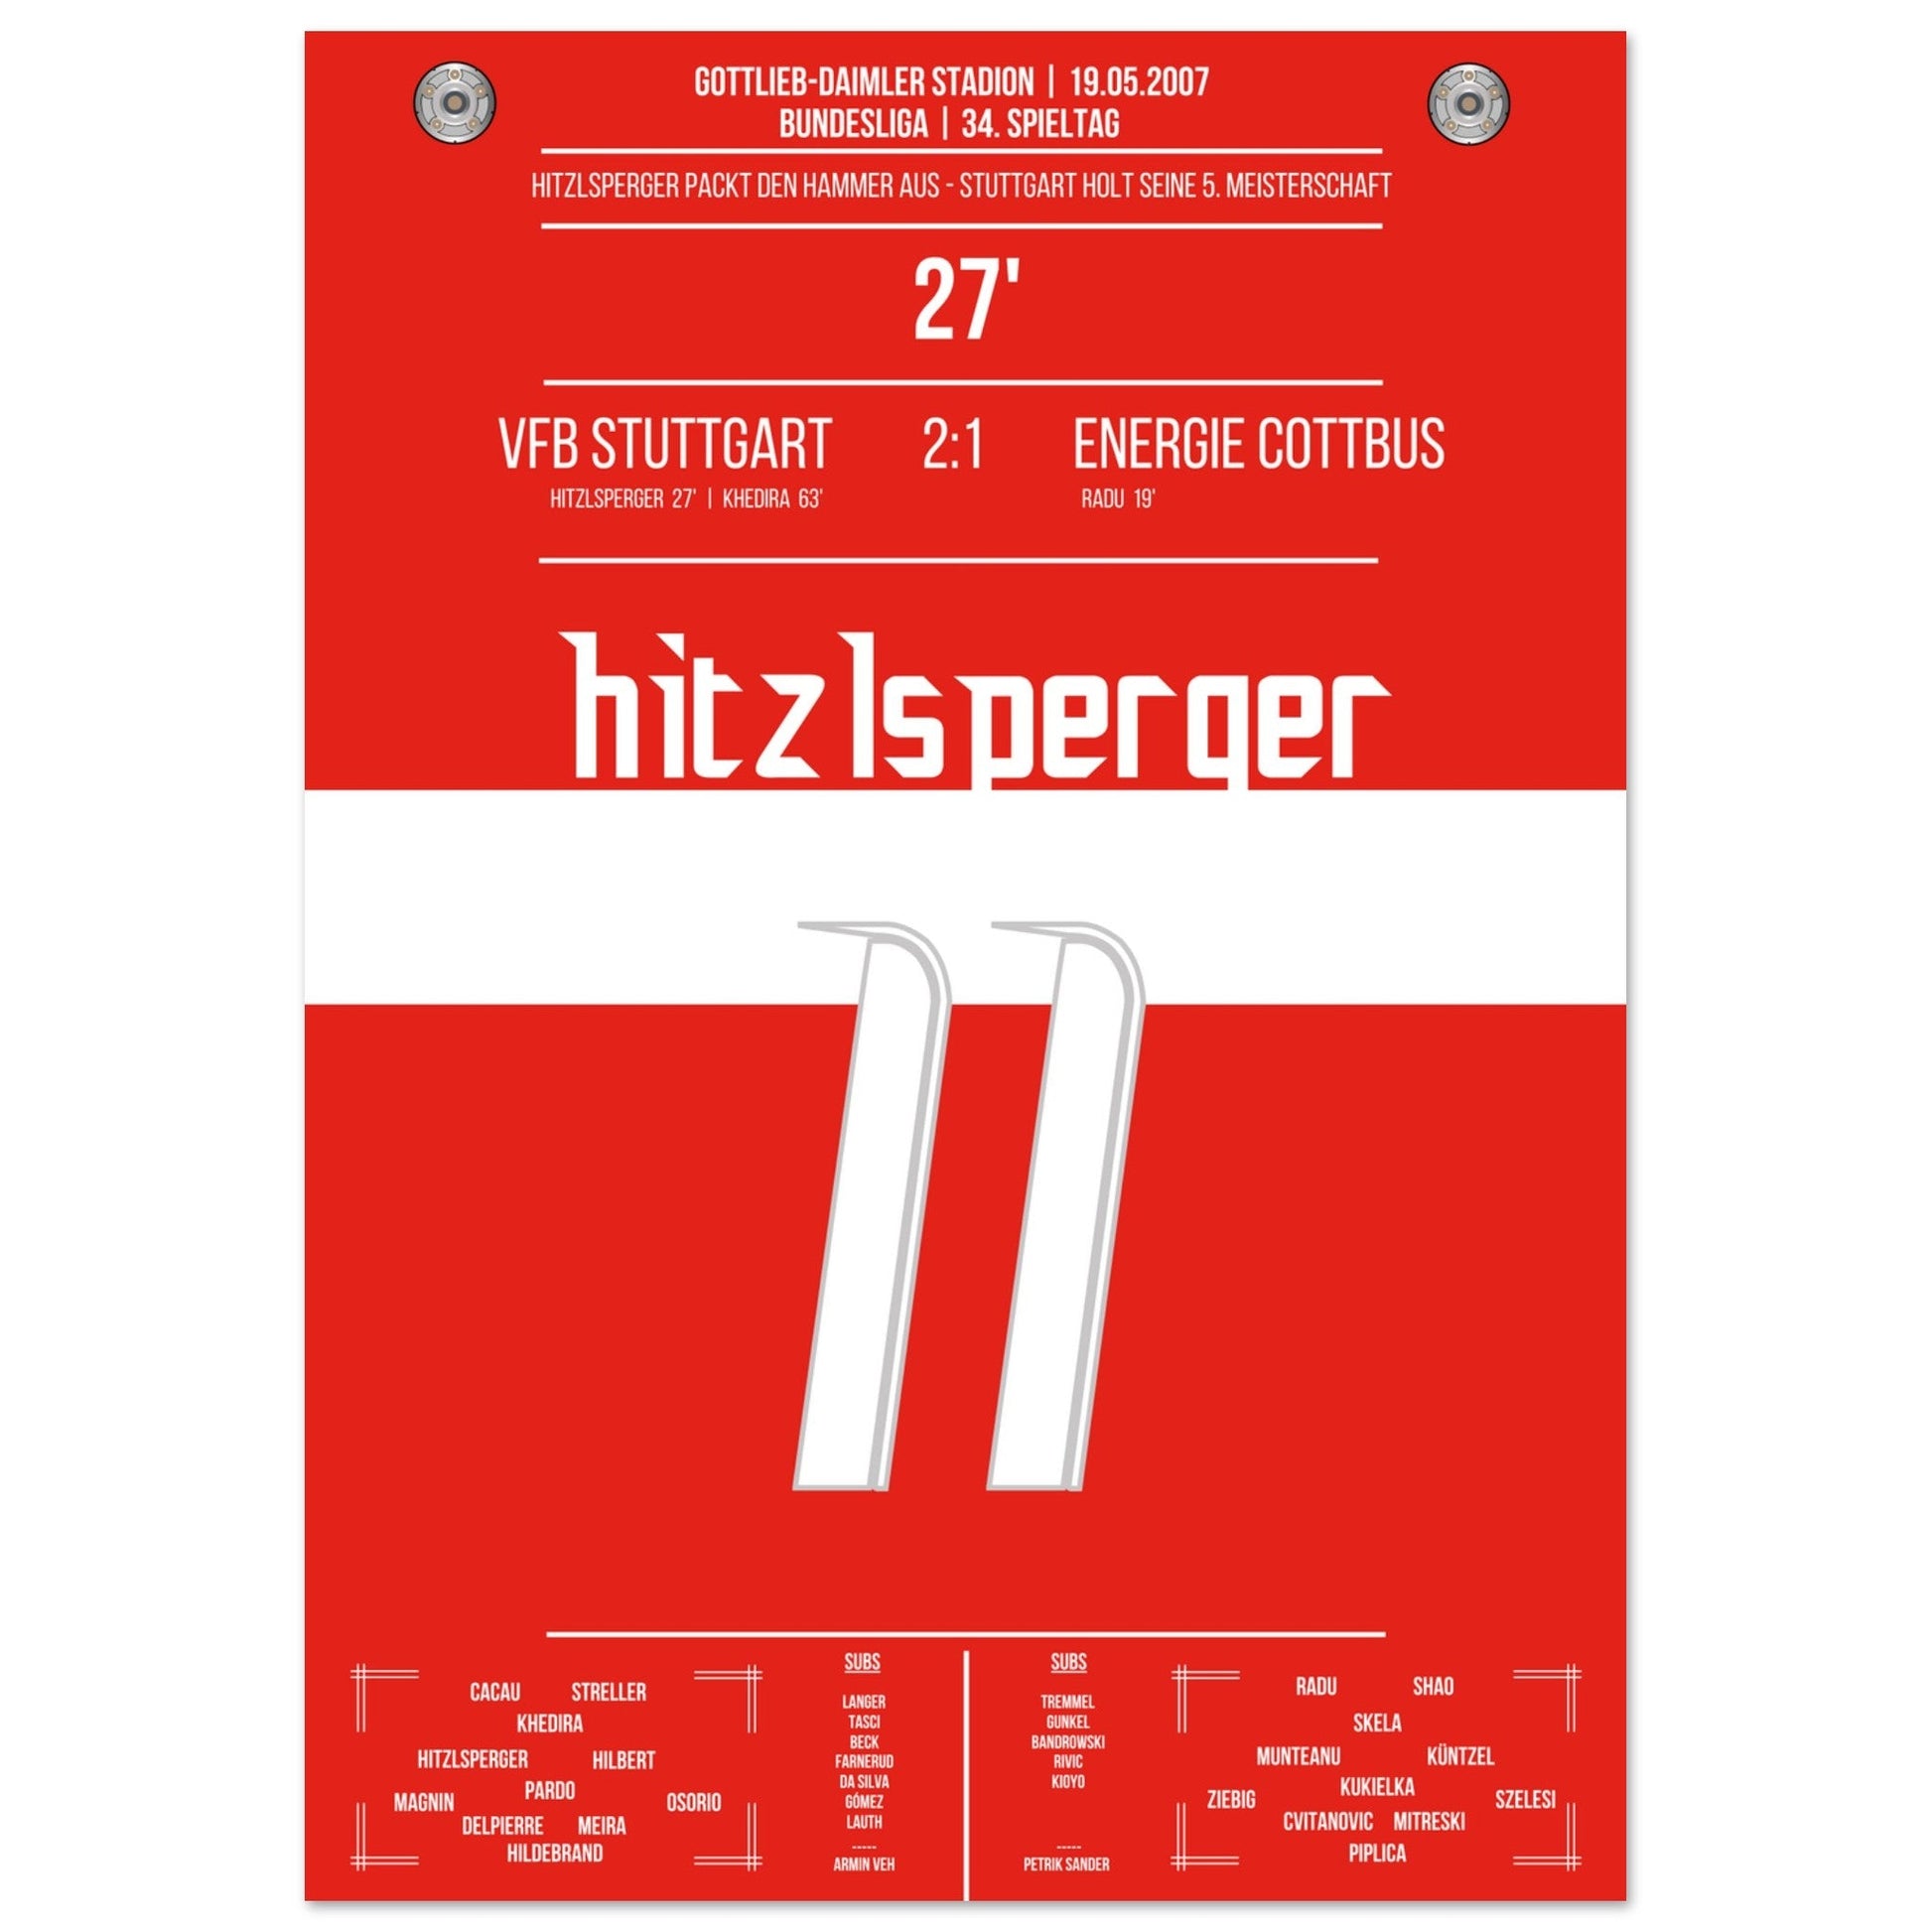 Hitzlsperger-Hammer bei Stuttgart's Gewinn der Meisterschaft 2007 